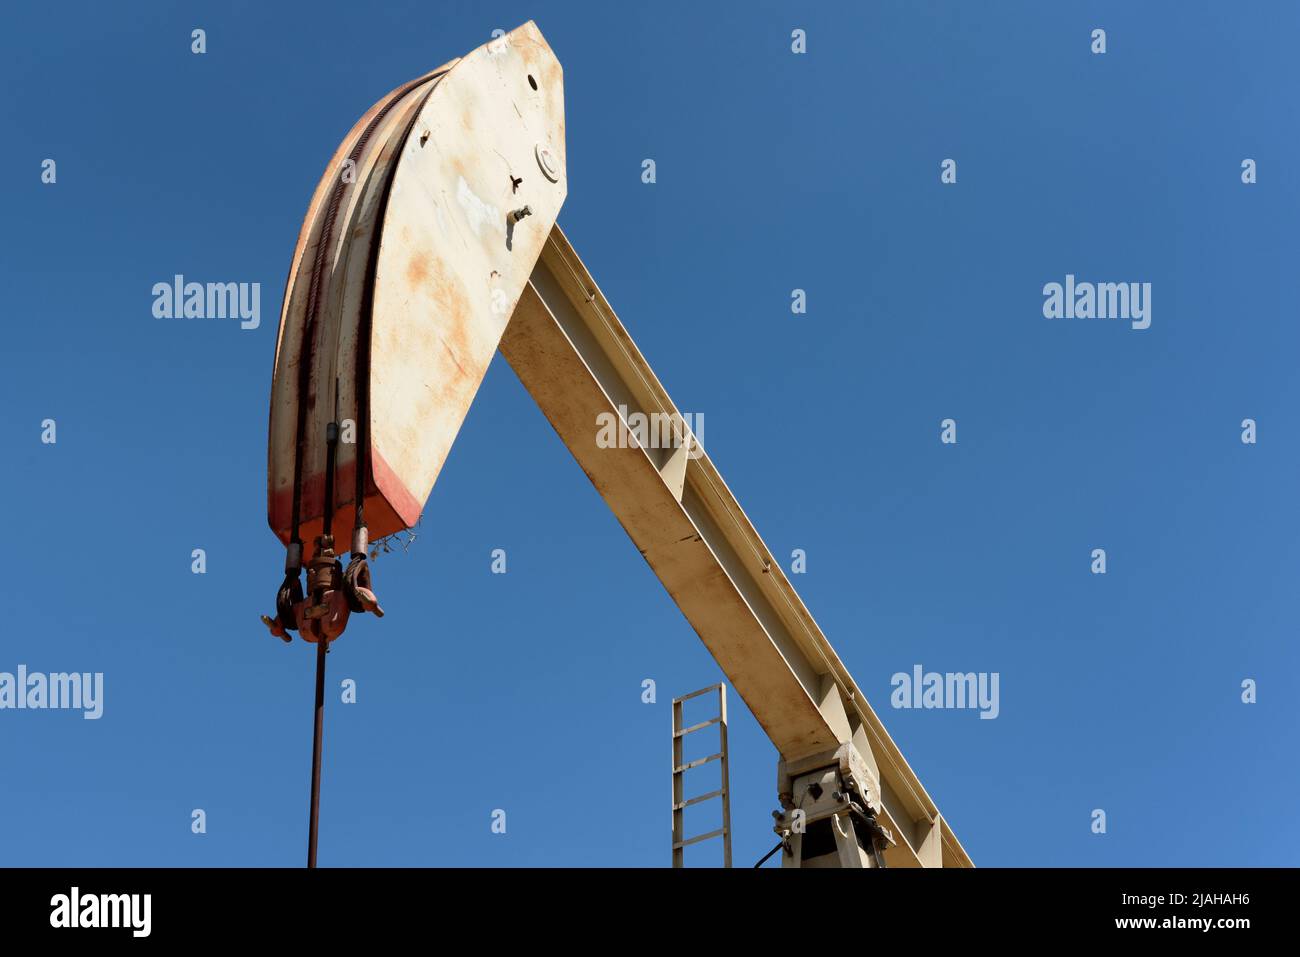 Nahaufnahme eines Kürbiers in einem Ölfeld mit einem strahlend blauen Himmel. Stockfoto